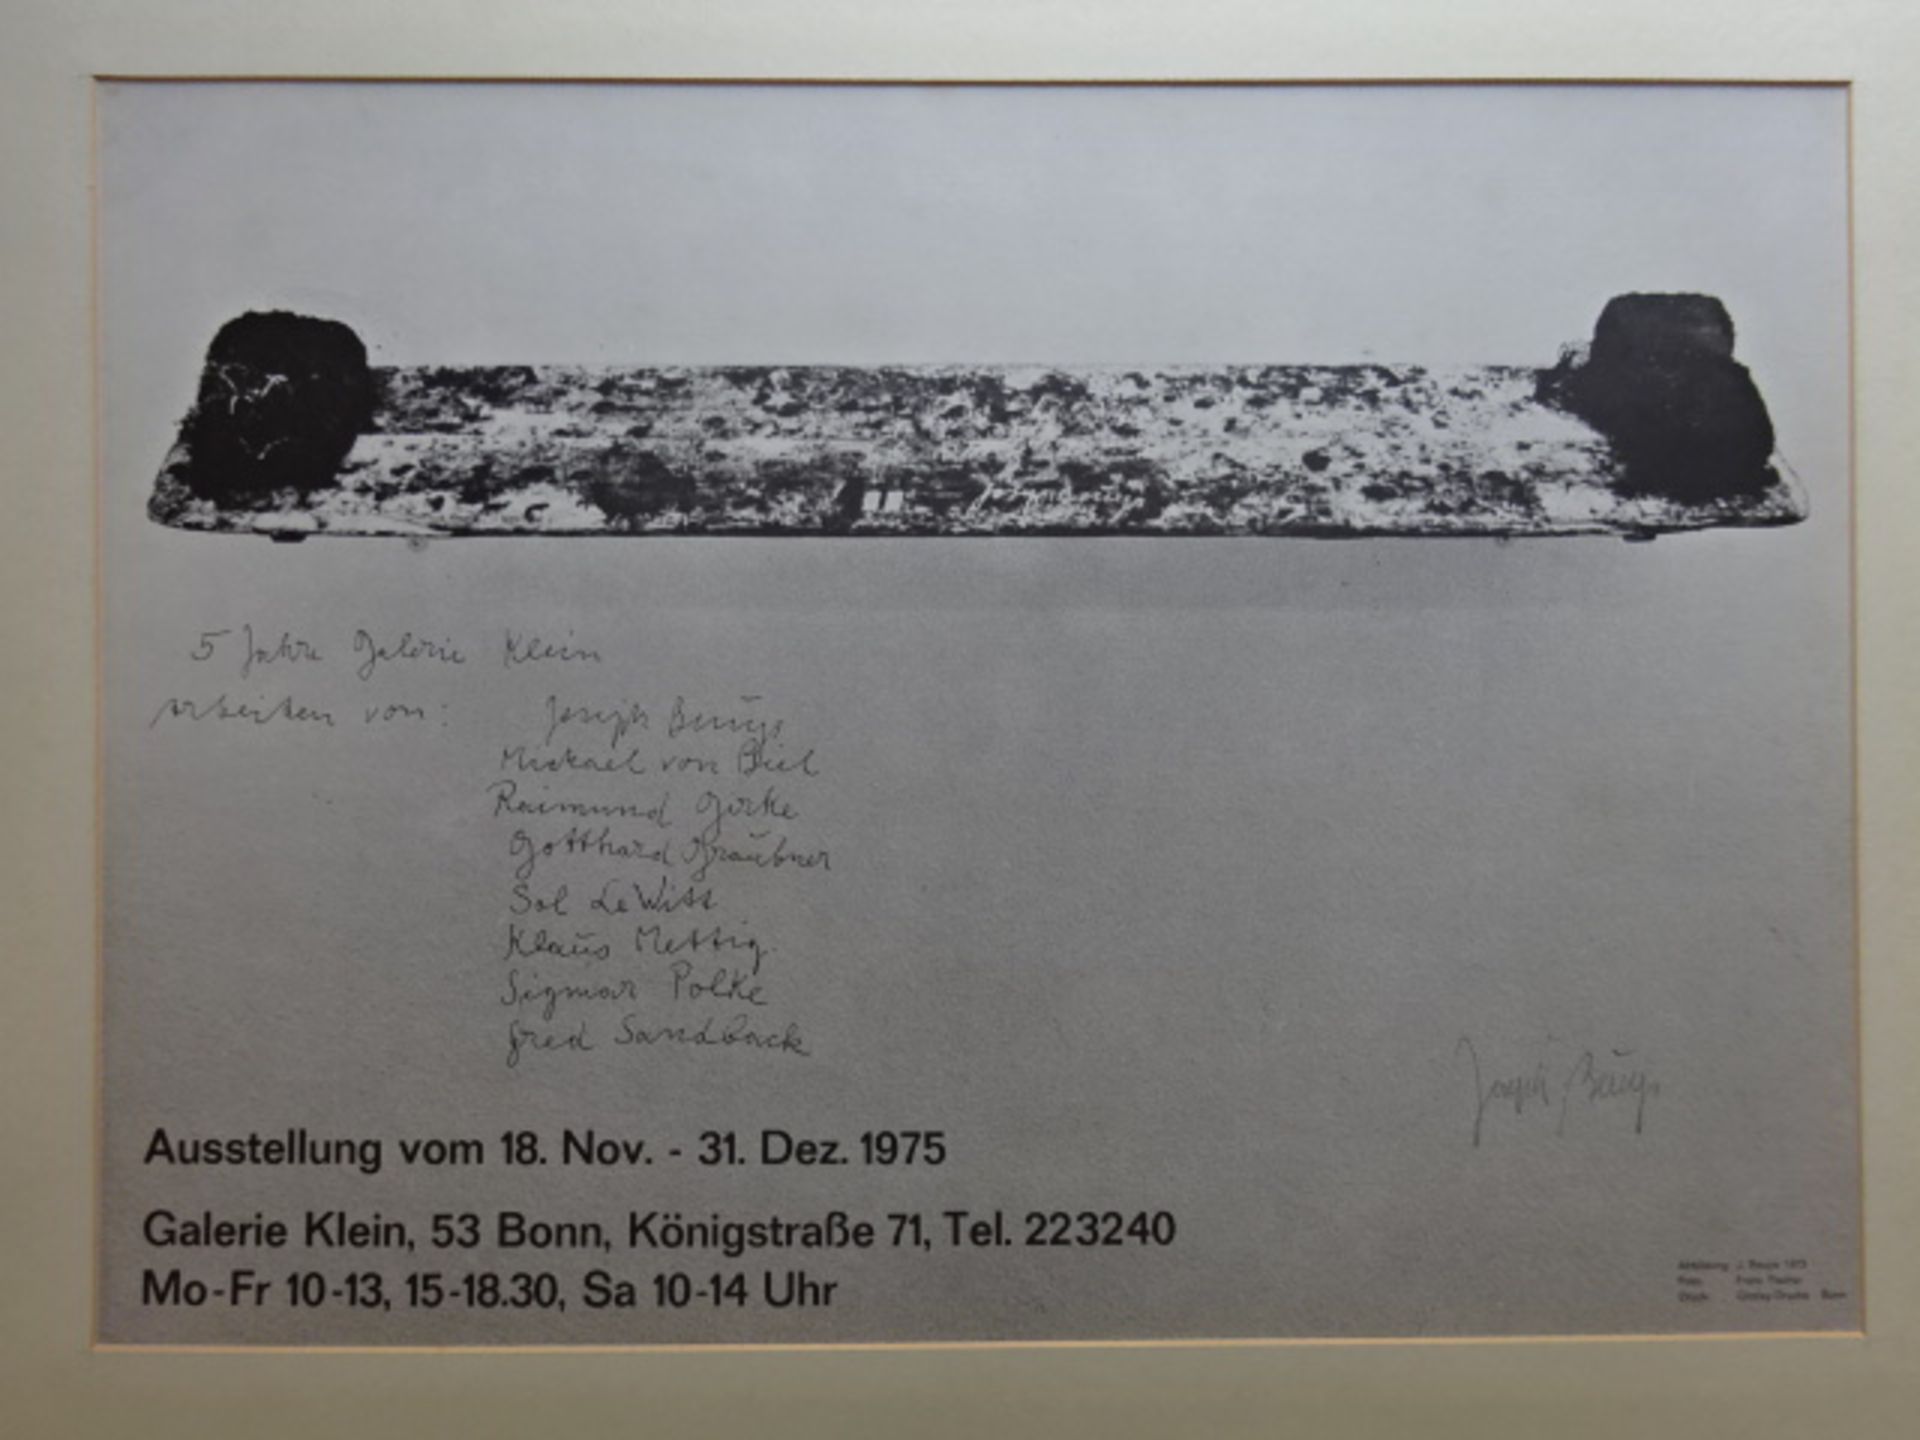 Beuys - 5 Jahre Galerie Klein - Image 2 of 3